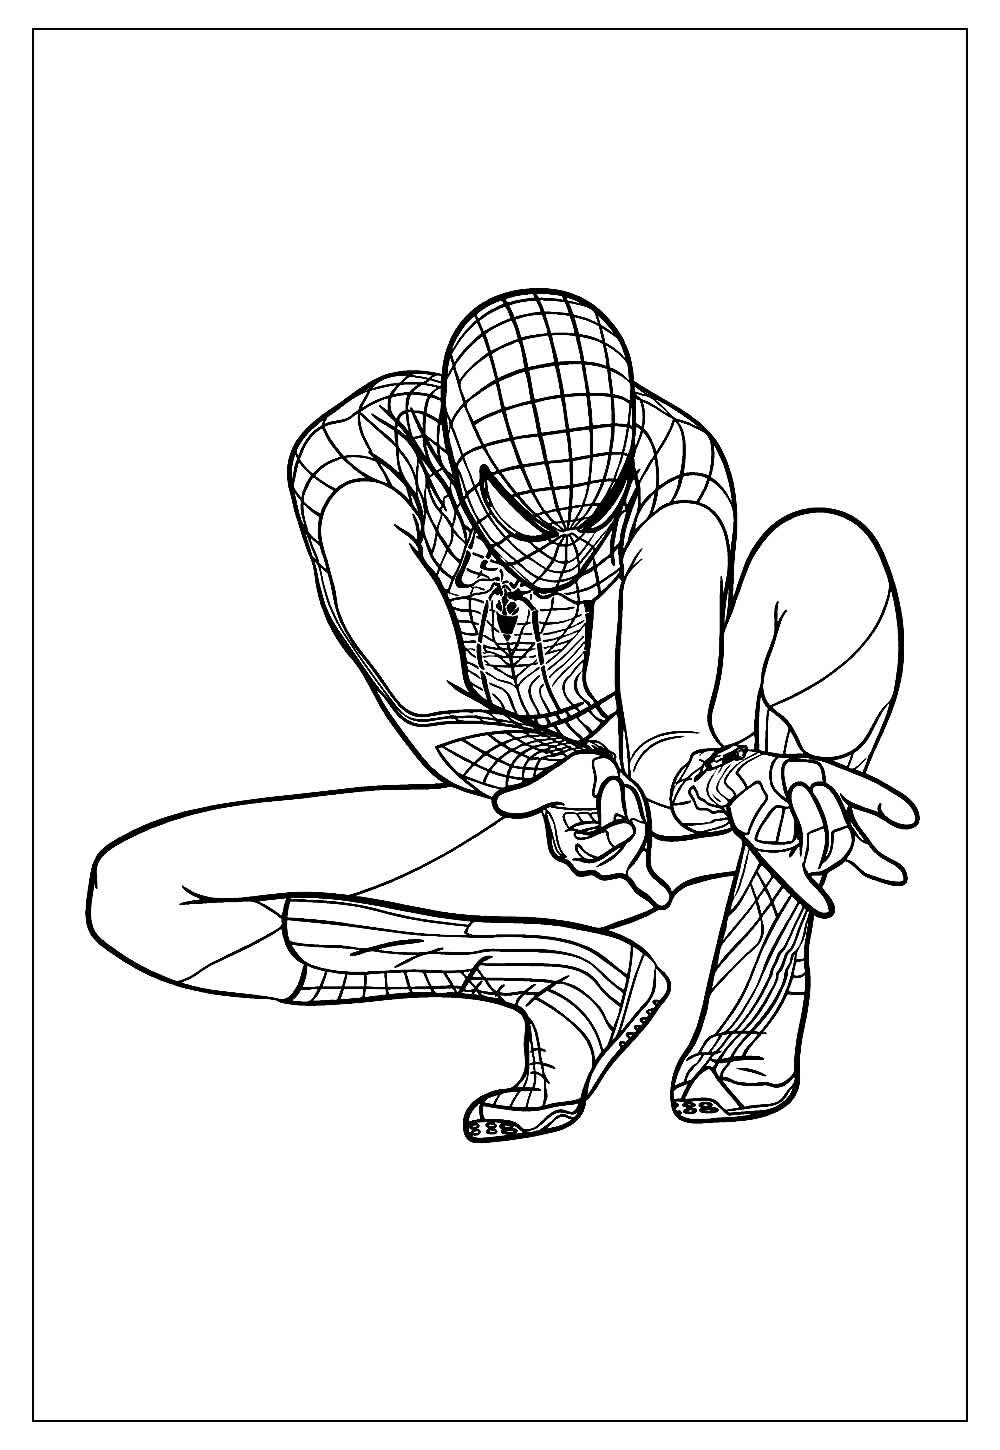 Desenhos Do Homem Aranha Para Colorir E Imprimir